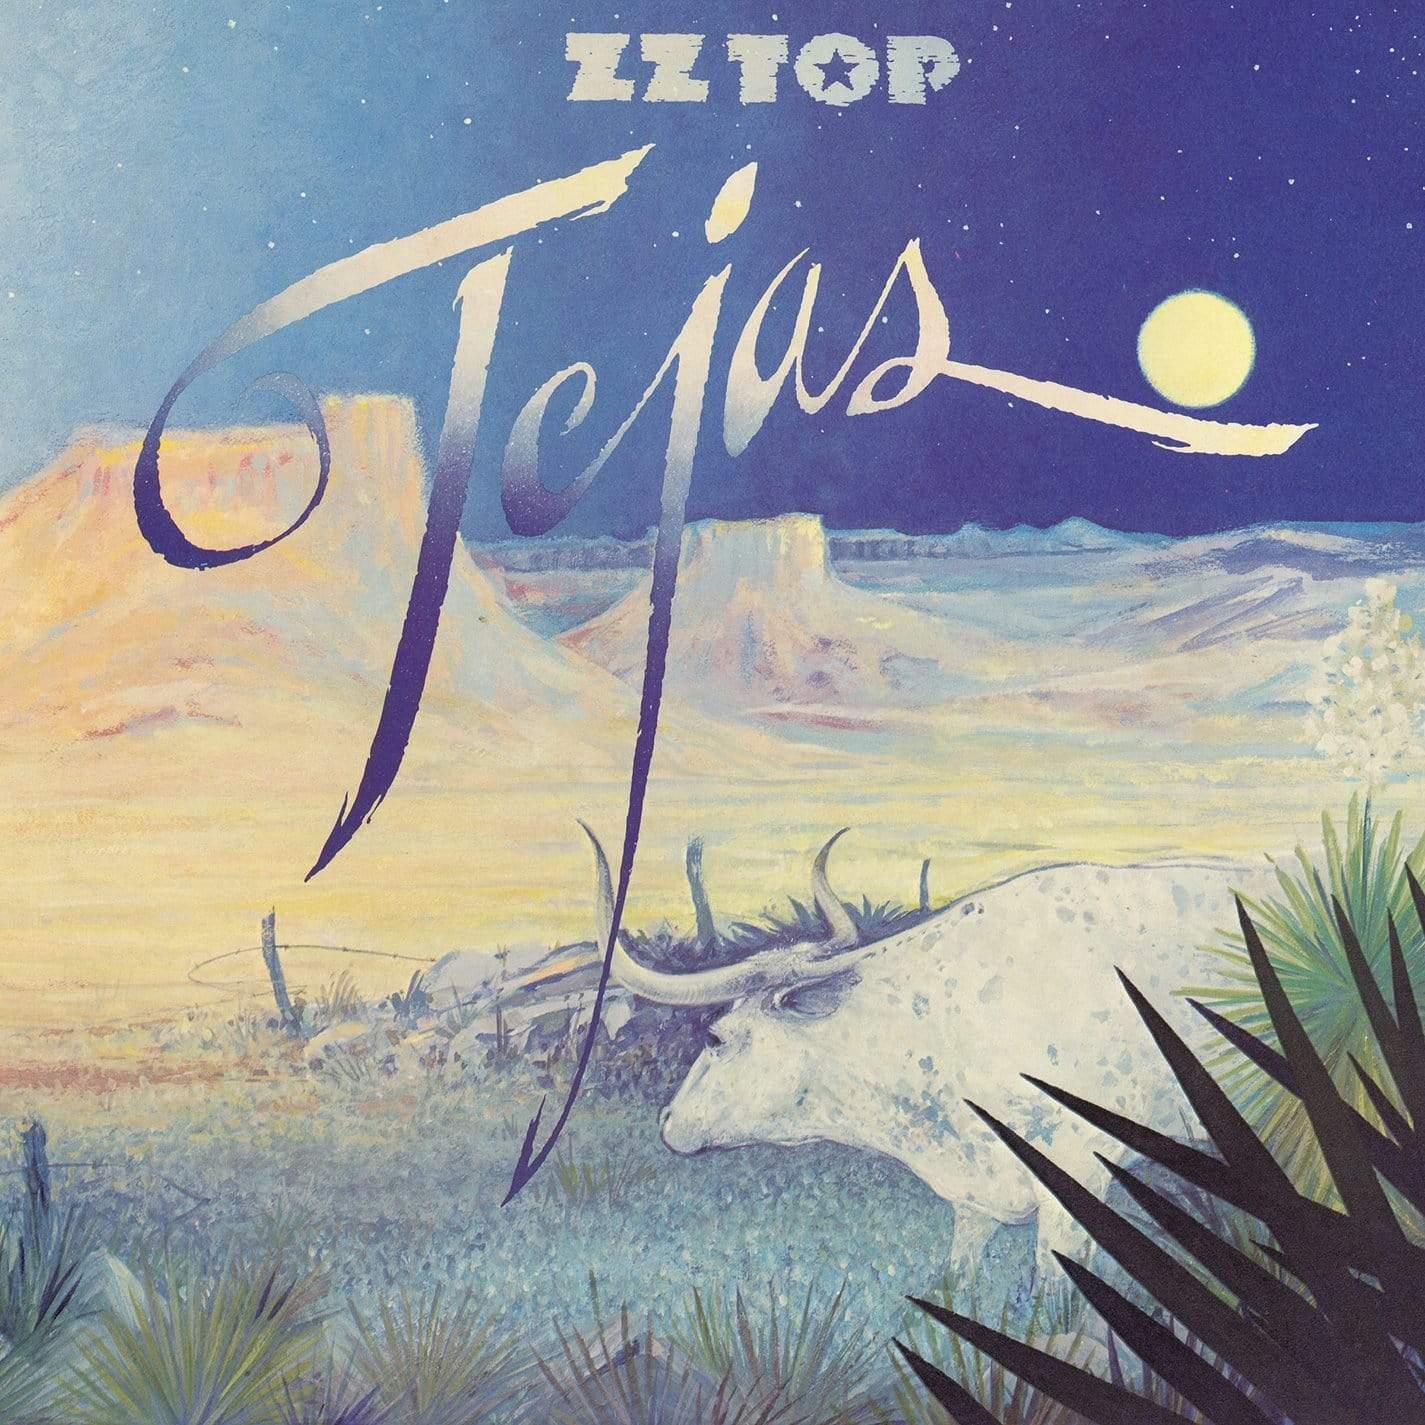 Zz Top - Tejas (Syeor Exclusive 2019) (Vinyl) - Joco Records